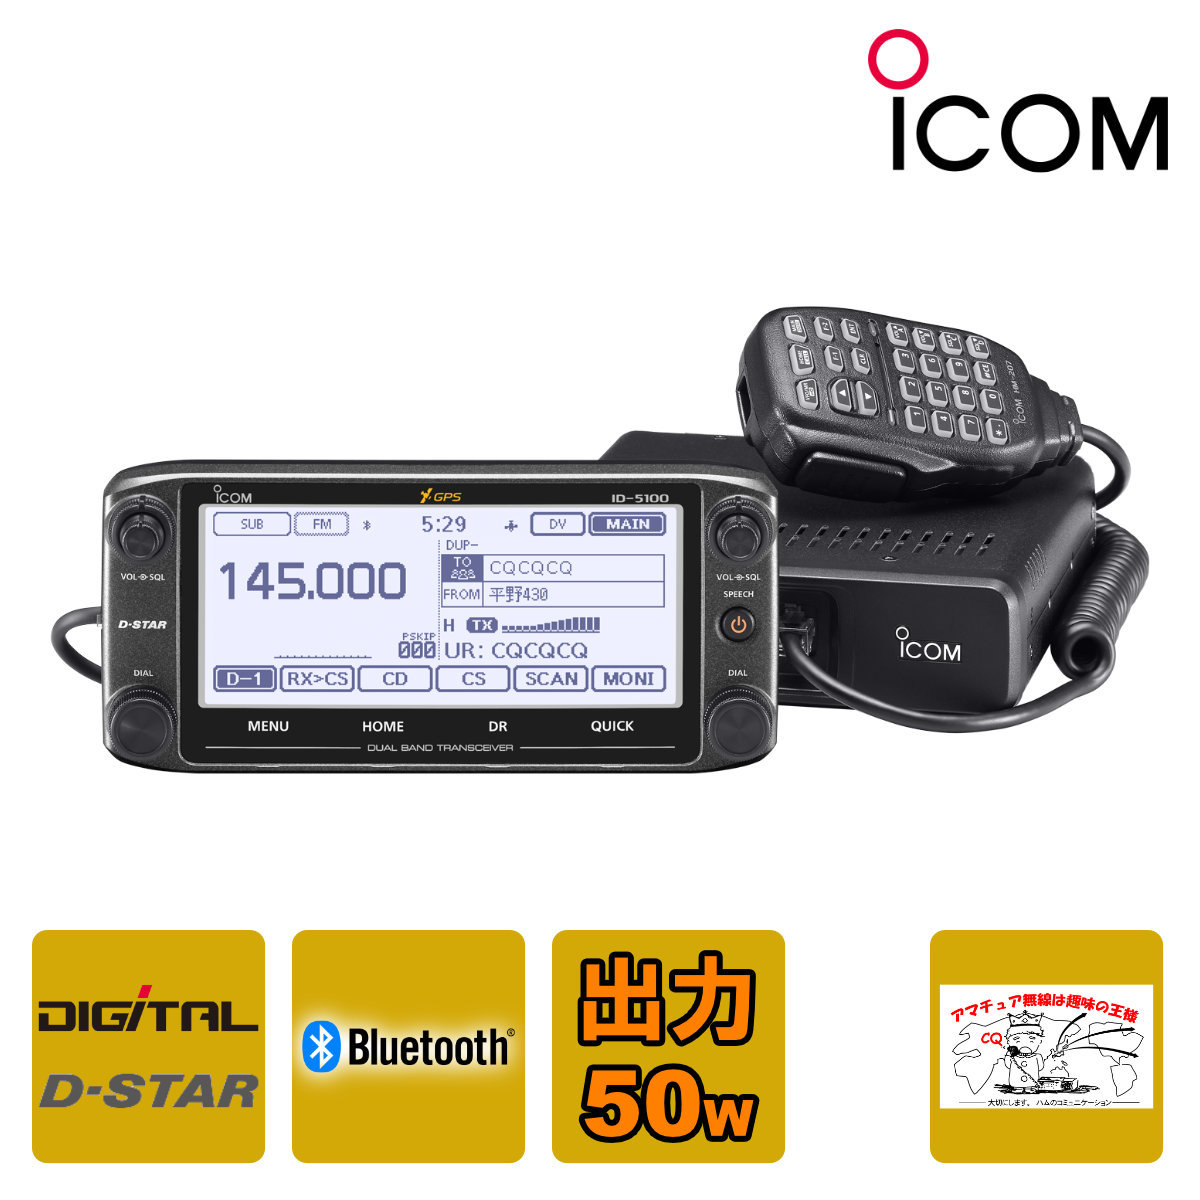  amateur radio ID-5100D #11 Icom 144/430MHz dual band digital 50W transceiver 